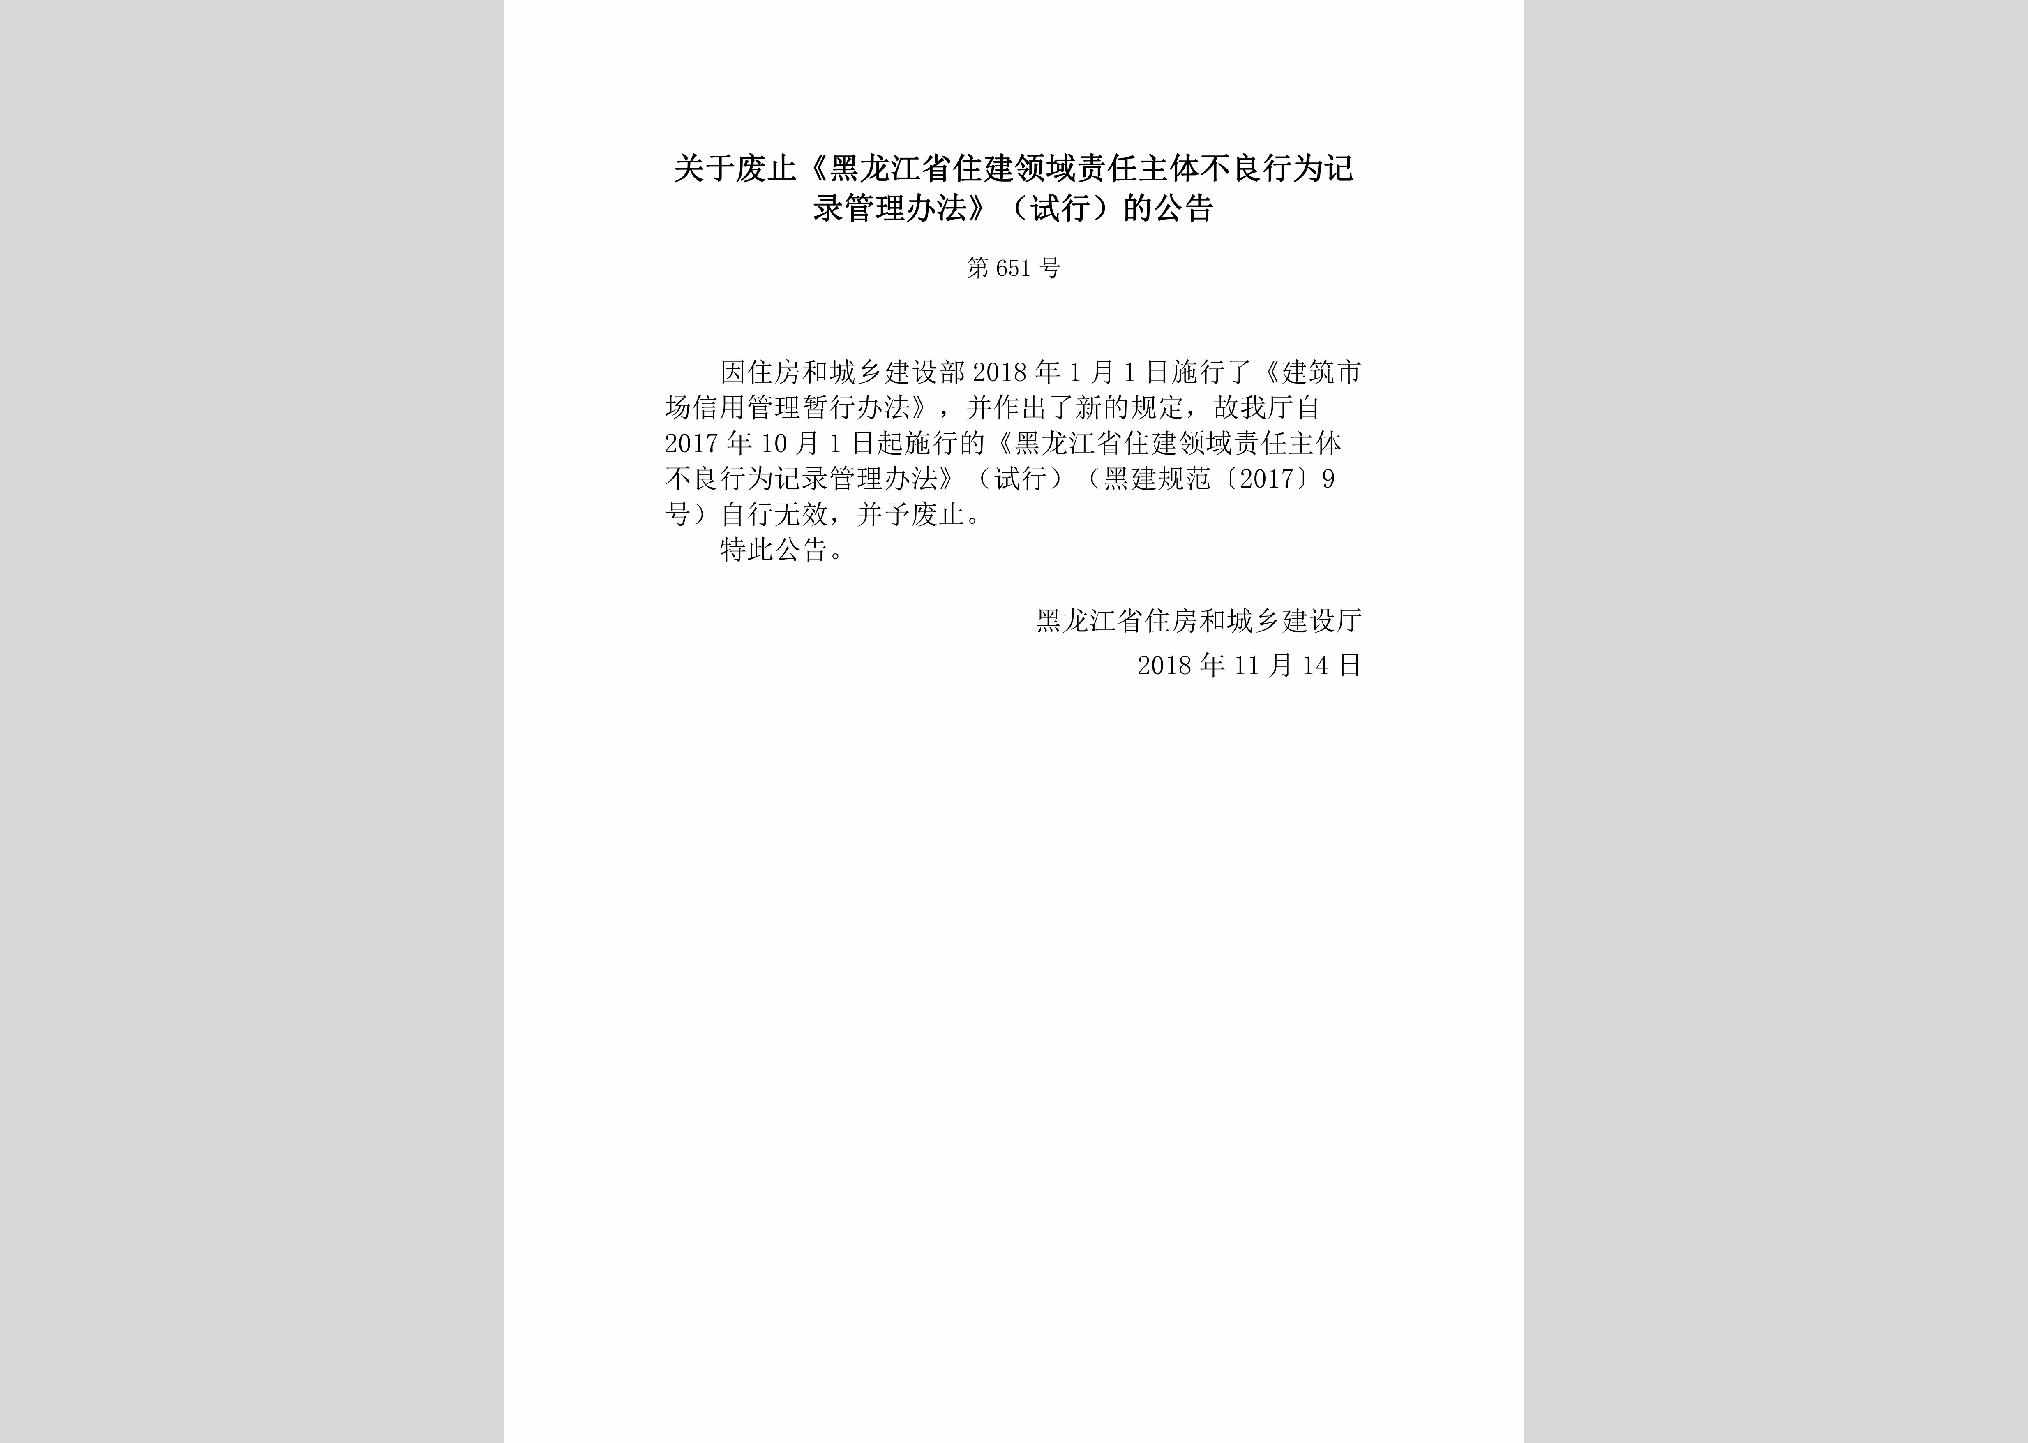 [2018]651号：关于废止《黑龙江省住建领域责任主体不良行为记录管理办法》（试行）的公告